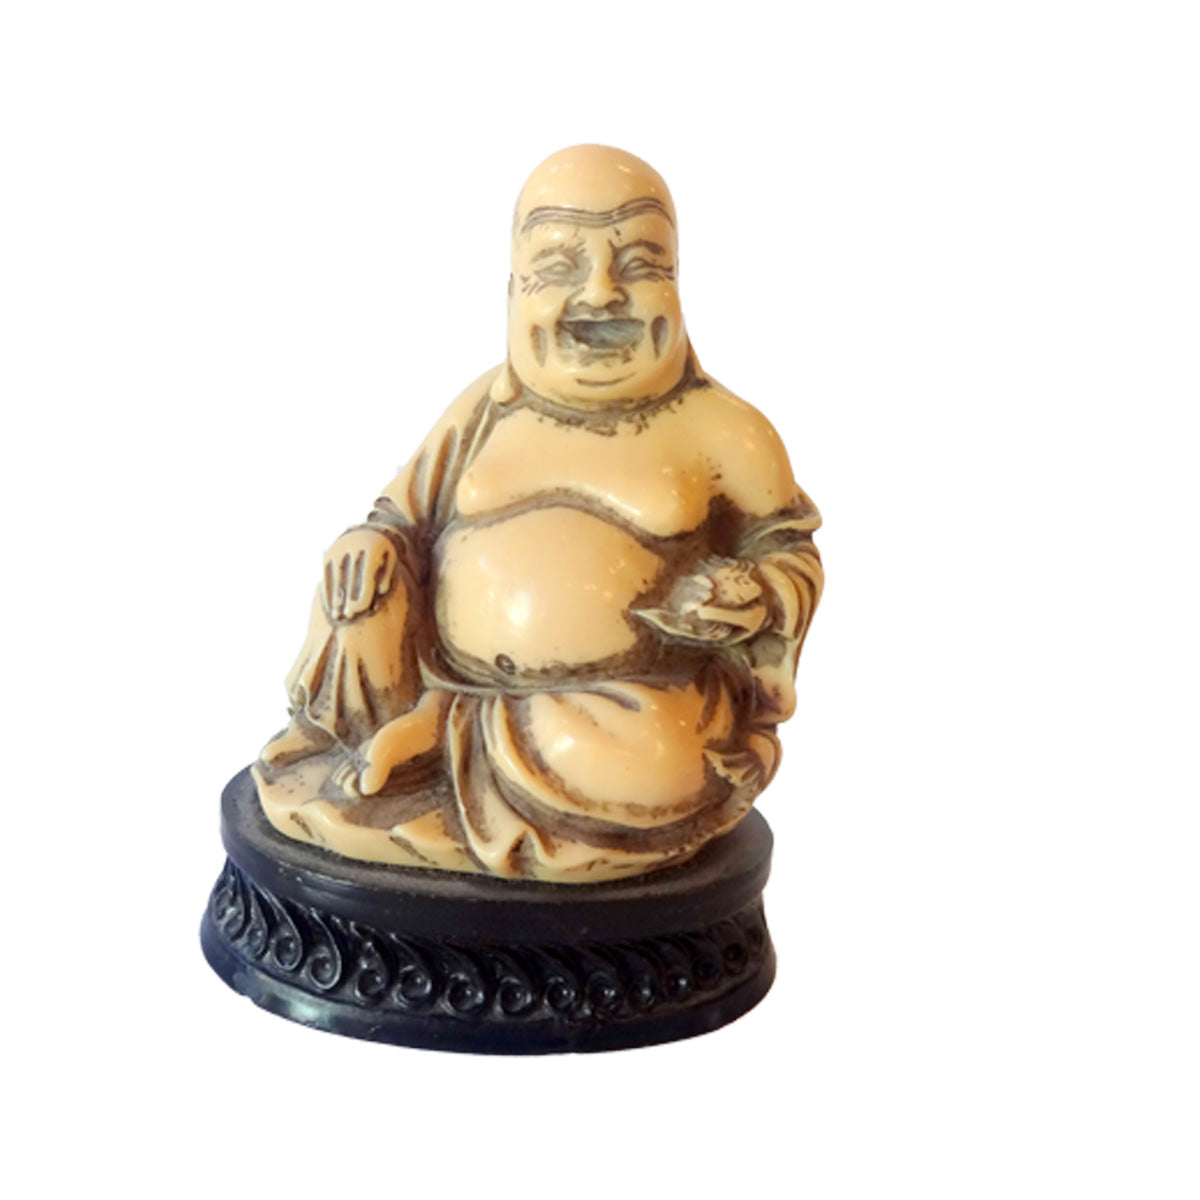 Buddha figur fremstillet af elfenbensfarvet komposit